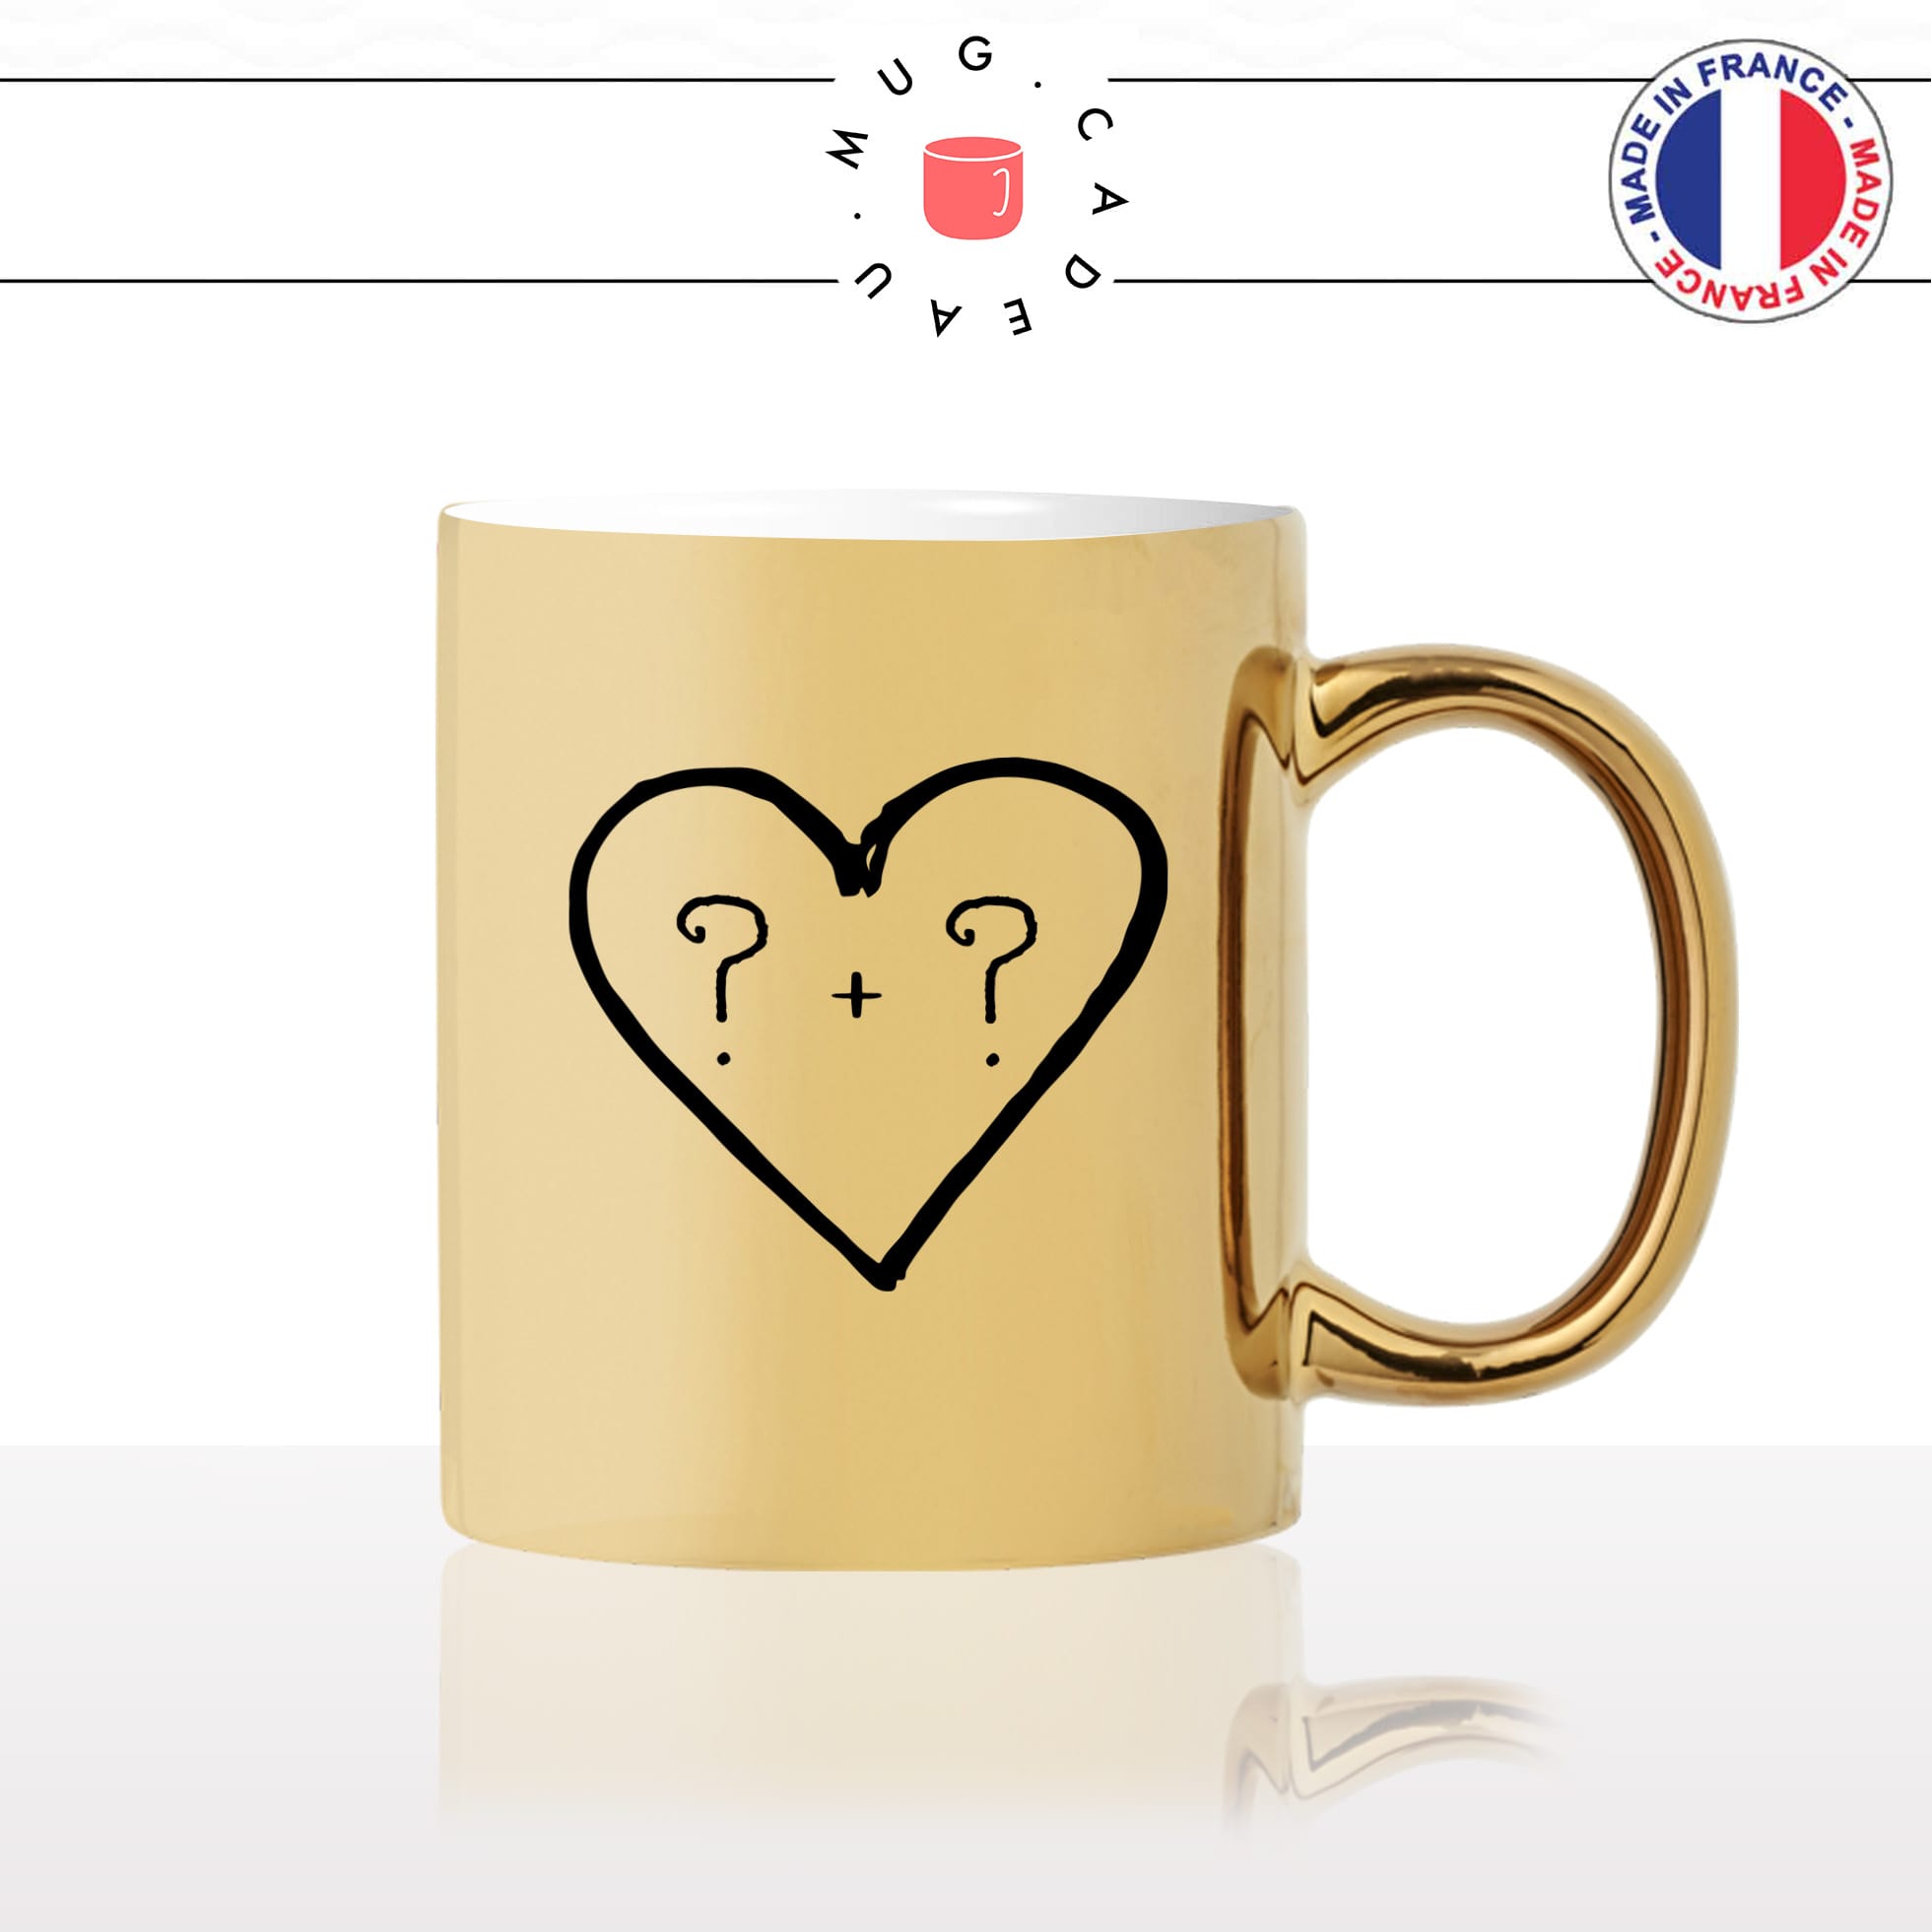 mug-tasse-or-doré-initiales-homme-femme-amoureux-coeur-couple-st-valentin-je-taime-amour-café-thé-idée-cadeau-original-personnalisé-gold2-min